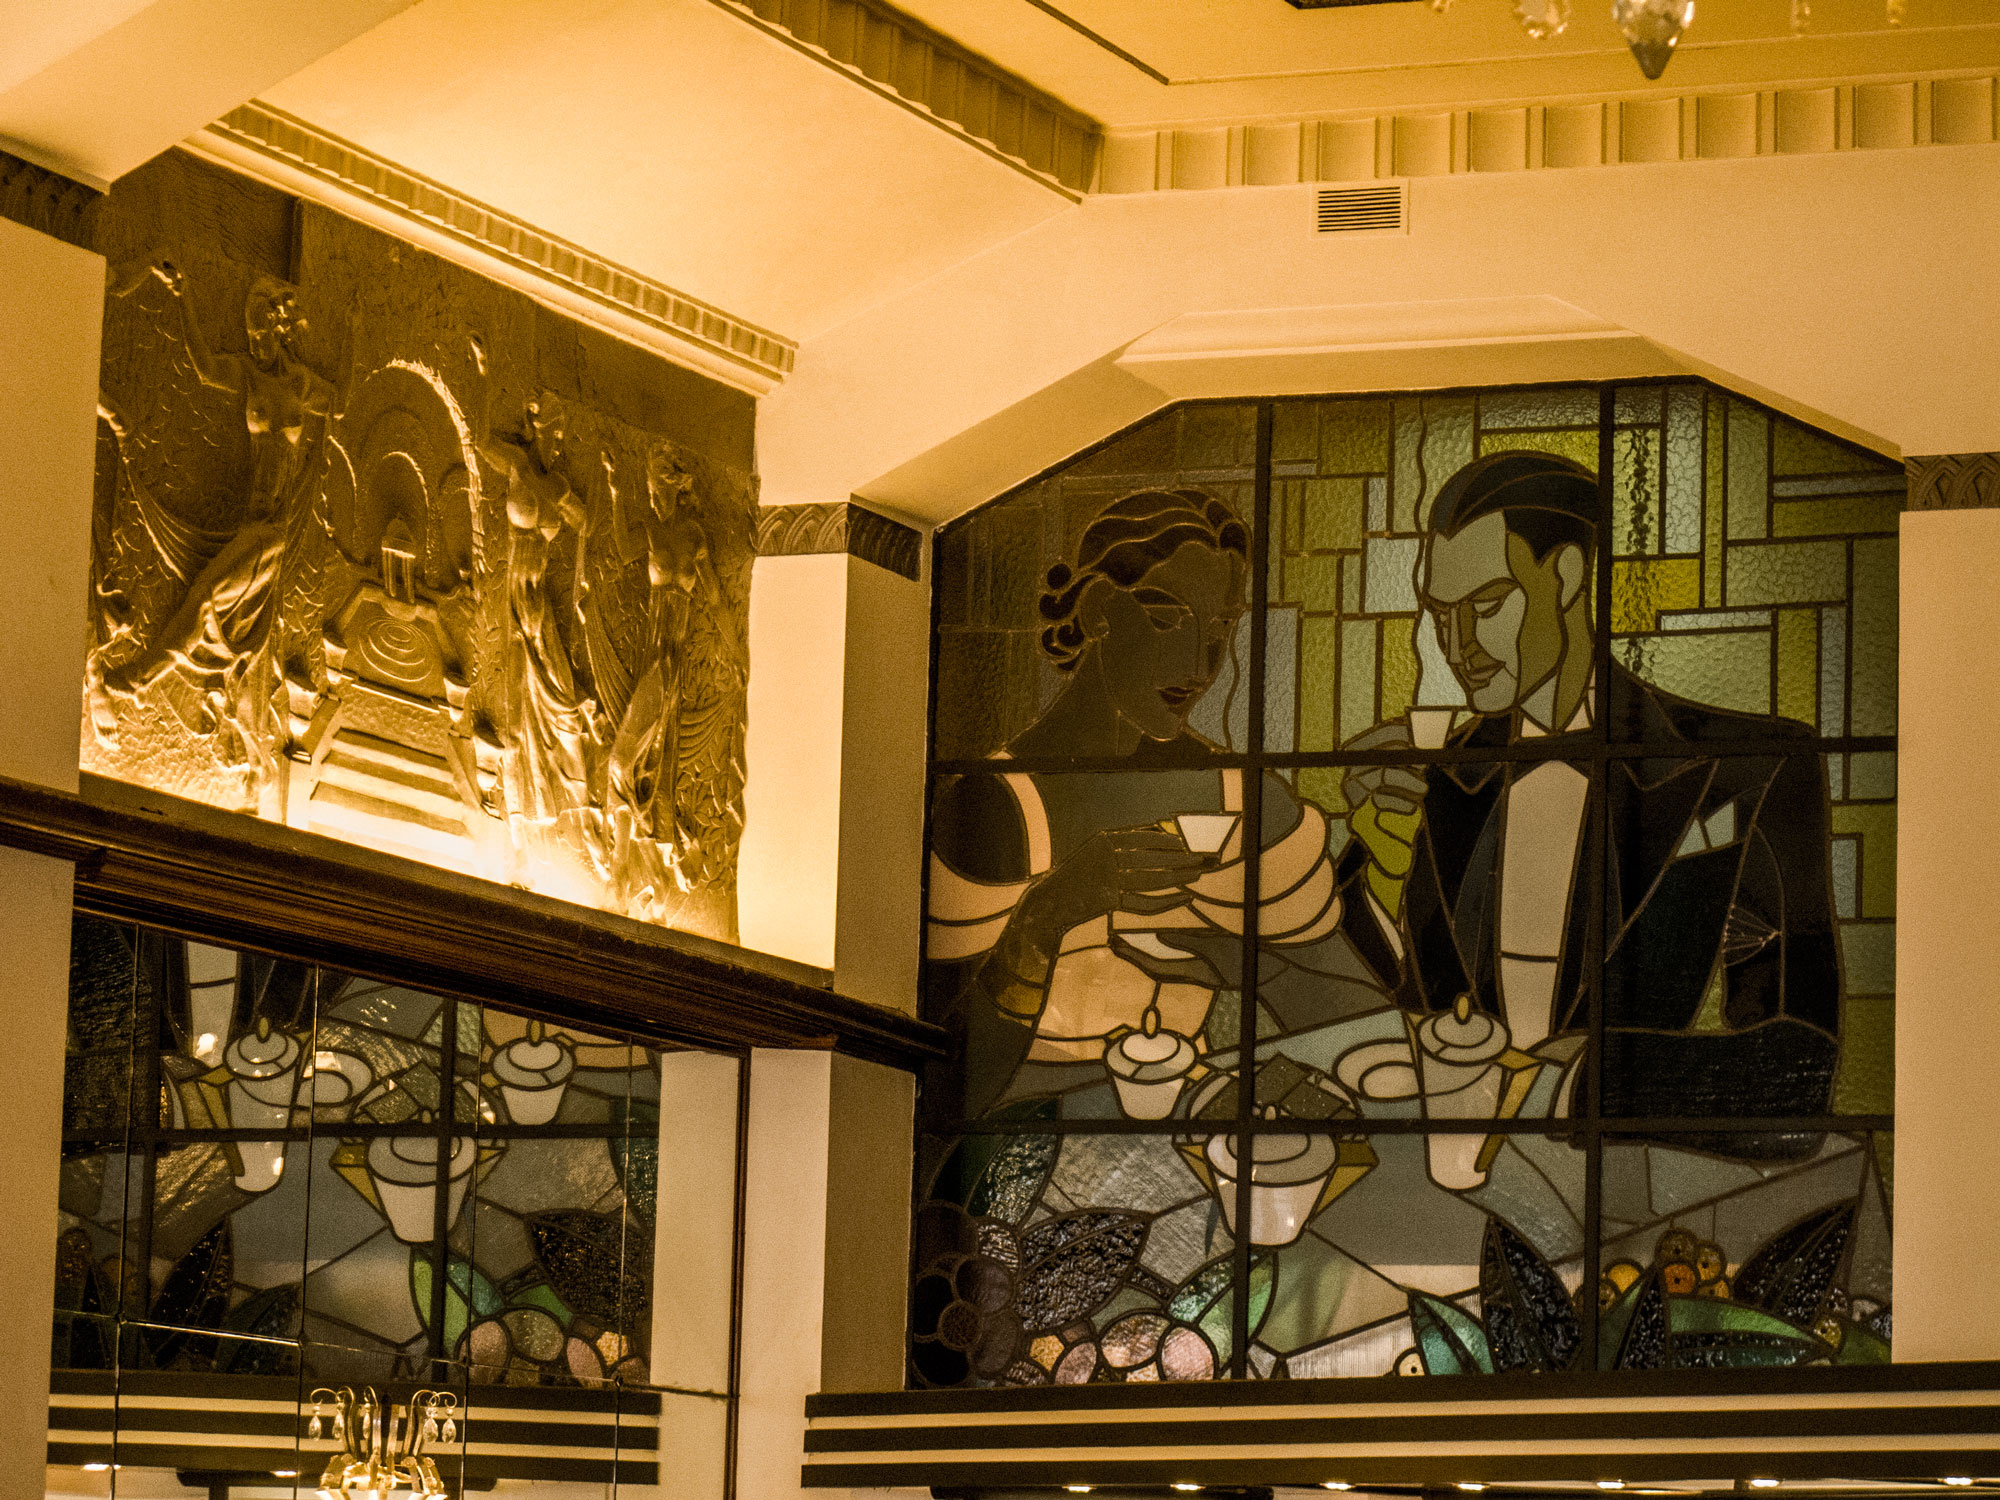 Art Deco vitral celebrating coffee at Mcdonalds Imperial Café in Porto.